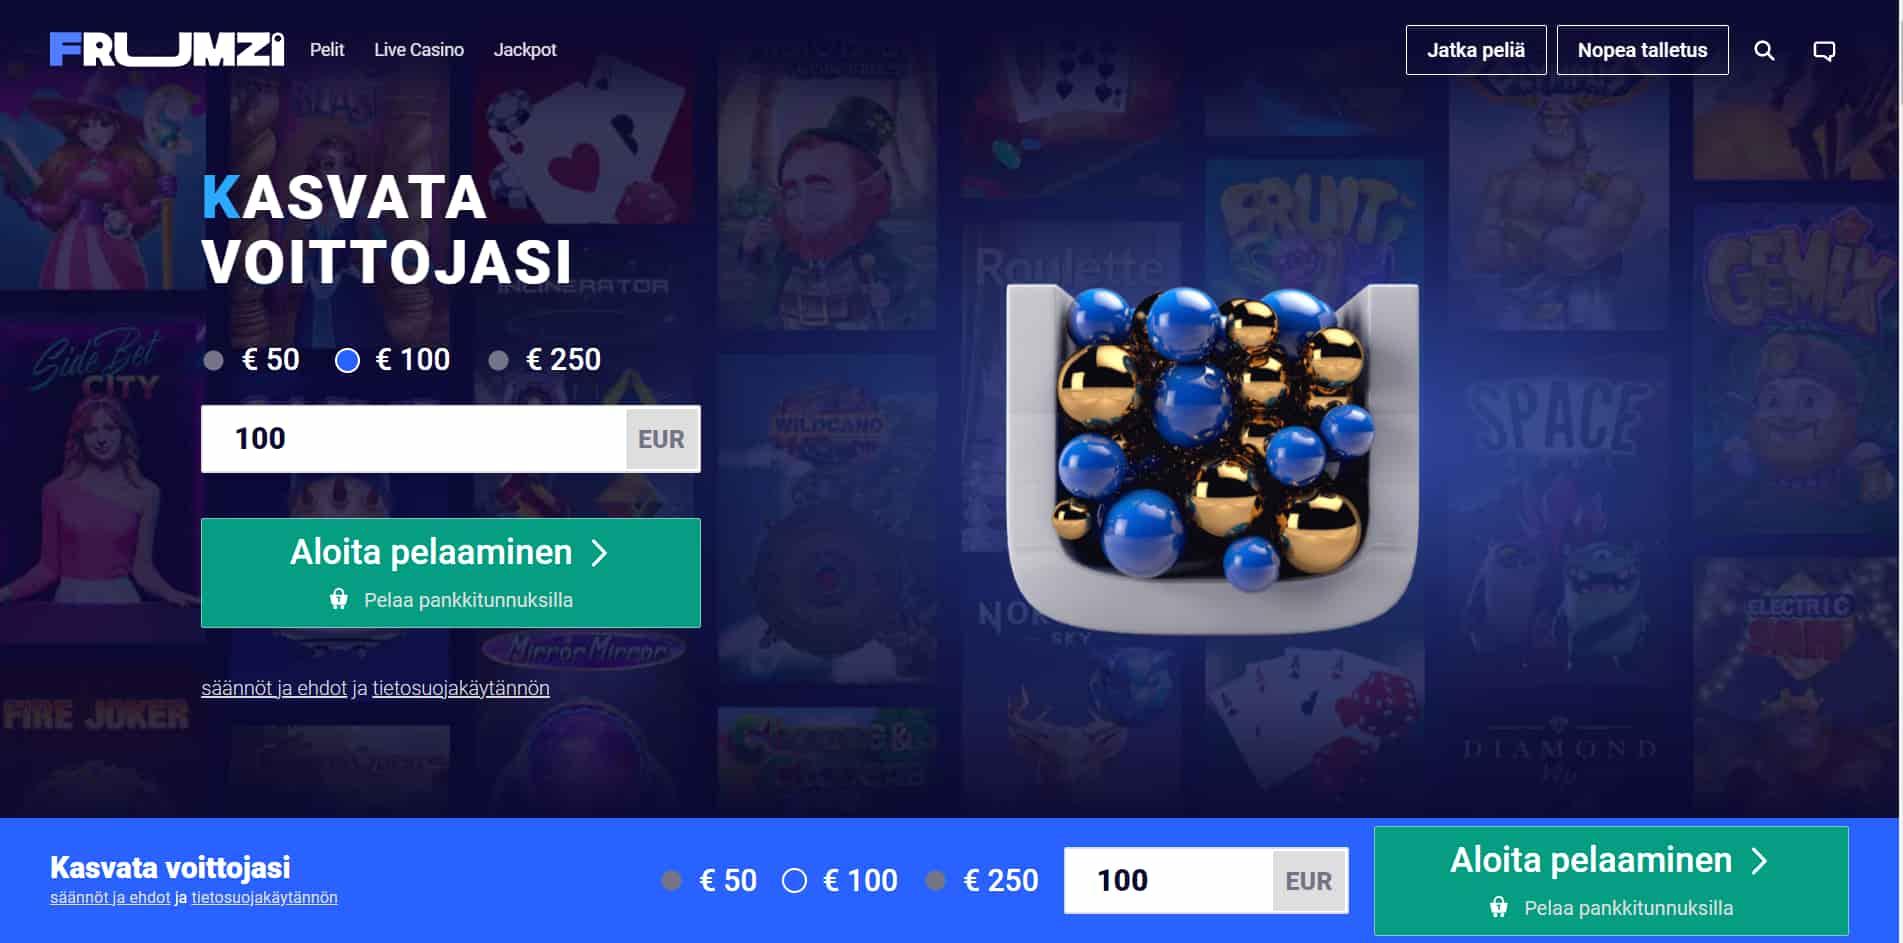 Frumzi casino homepage